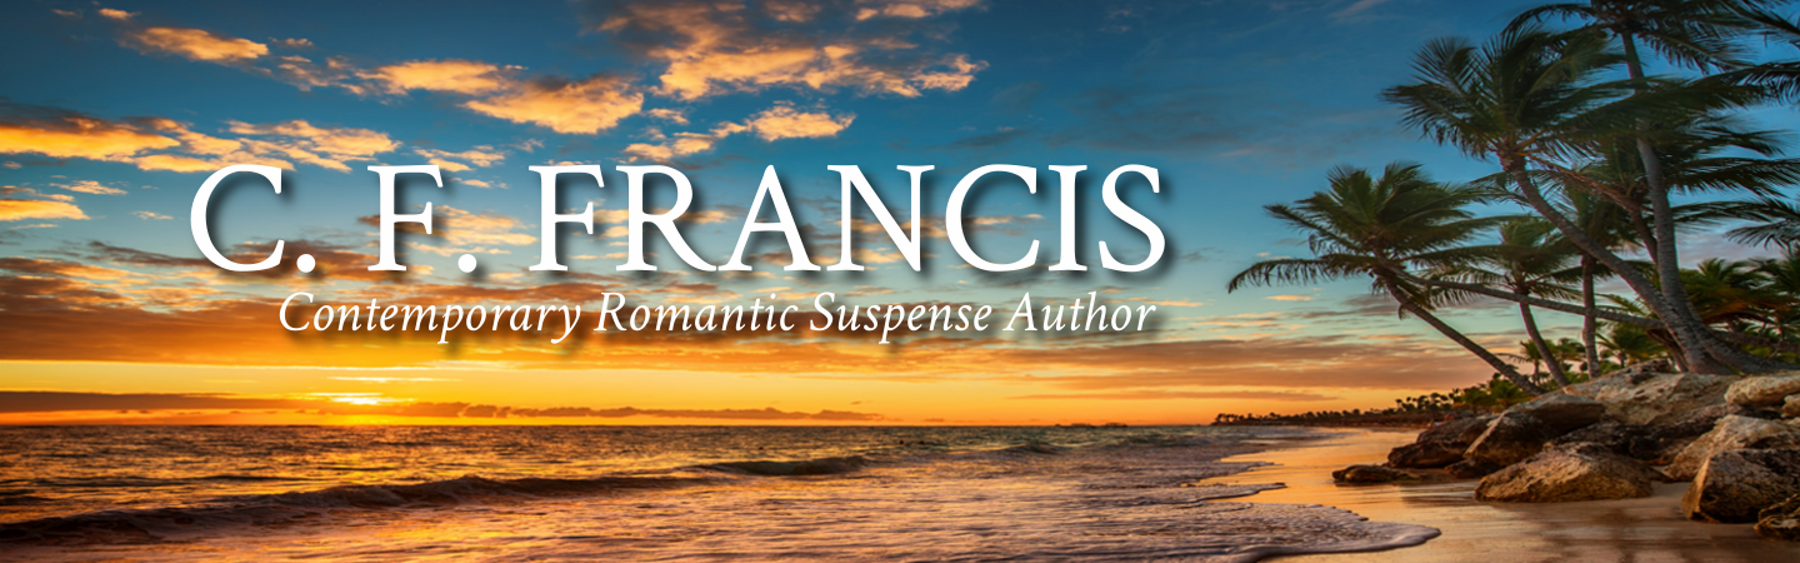 C. F. FRANCIS, Contemporary Romantic Suspense Author